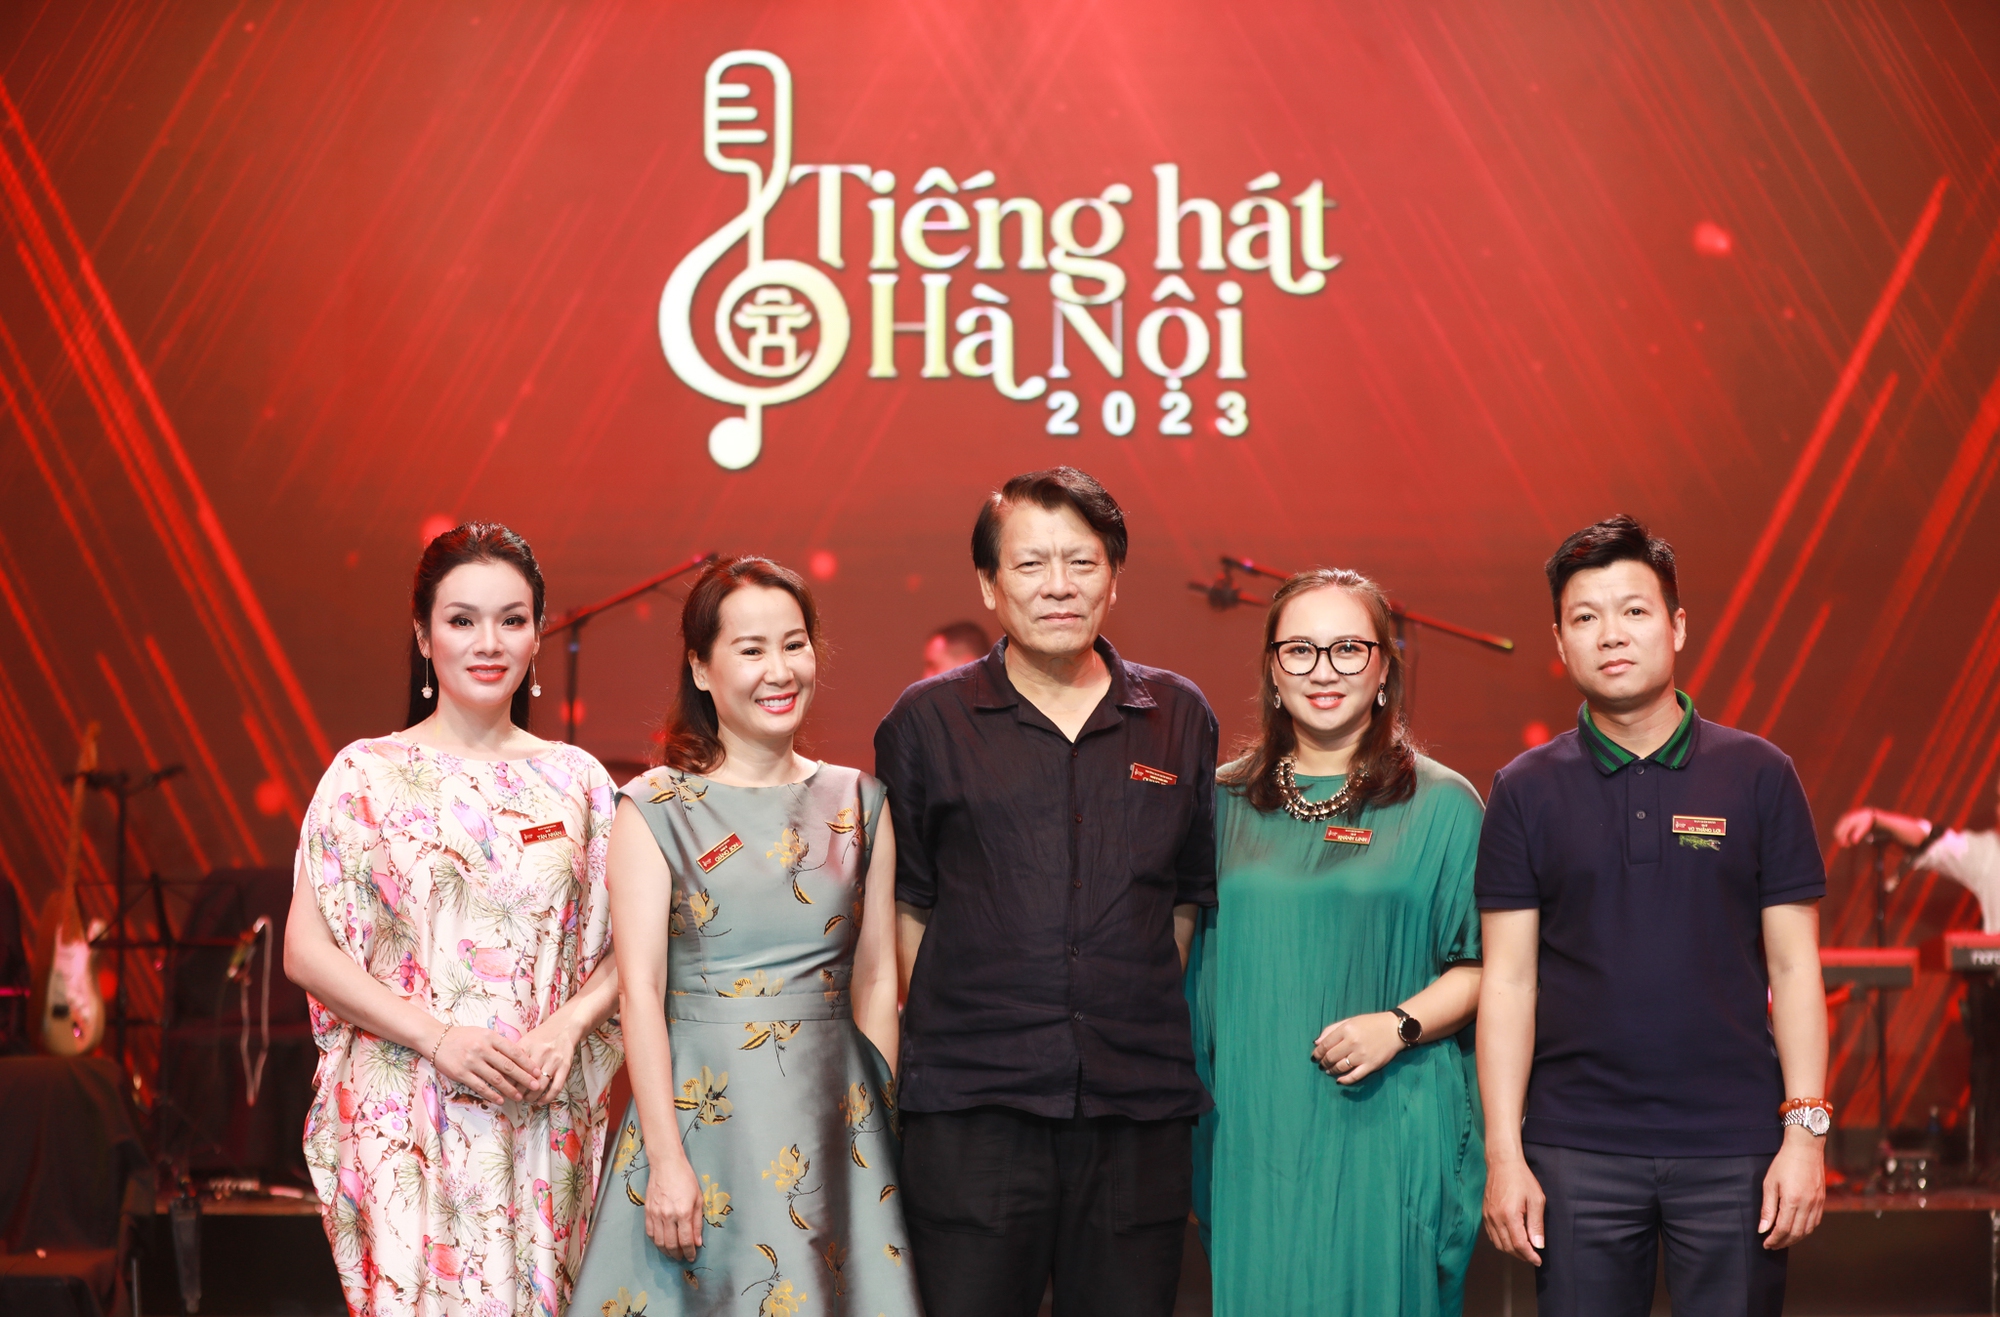 Cô gái 18 tuổi xứ Nghệ đã thắng giải Quán quân Tiếng hát Hà Nội 2023 - Ảnh 8.